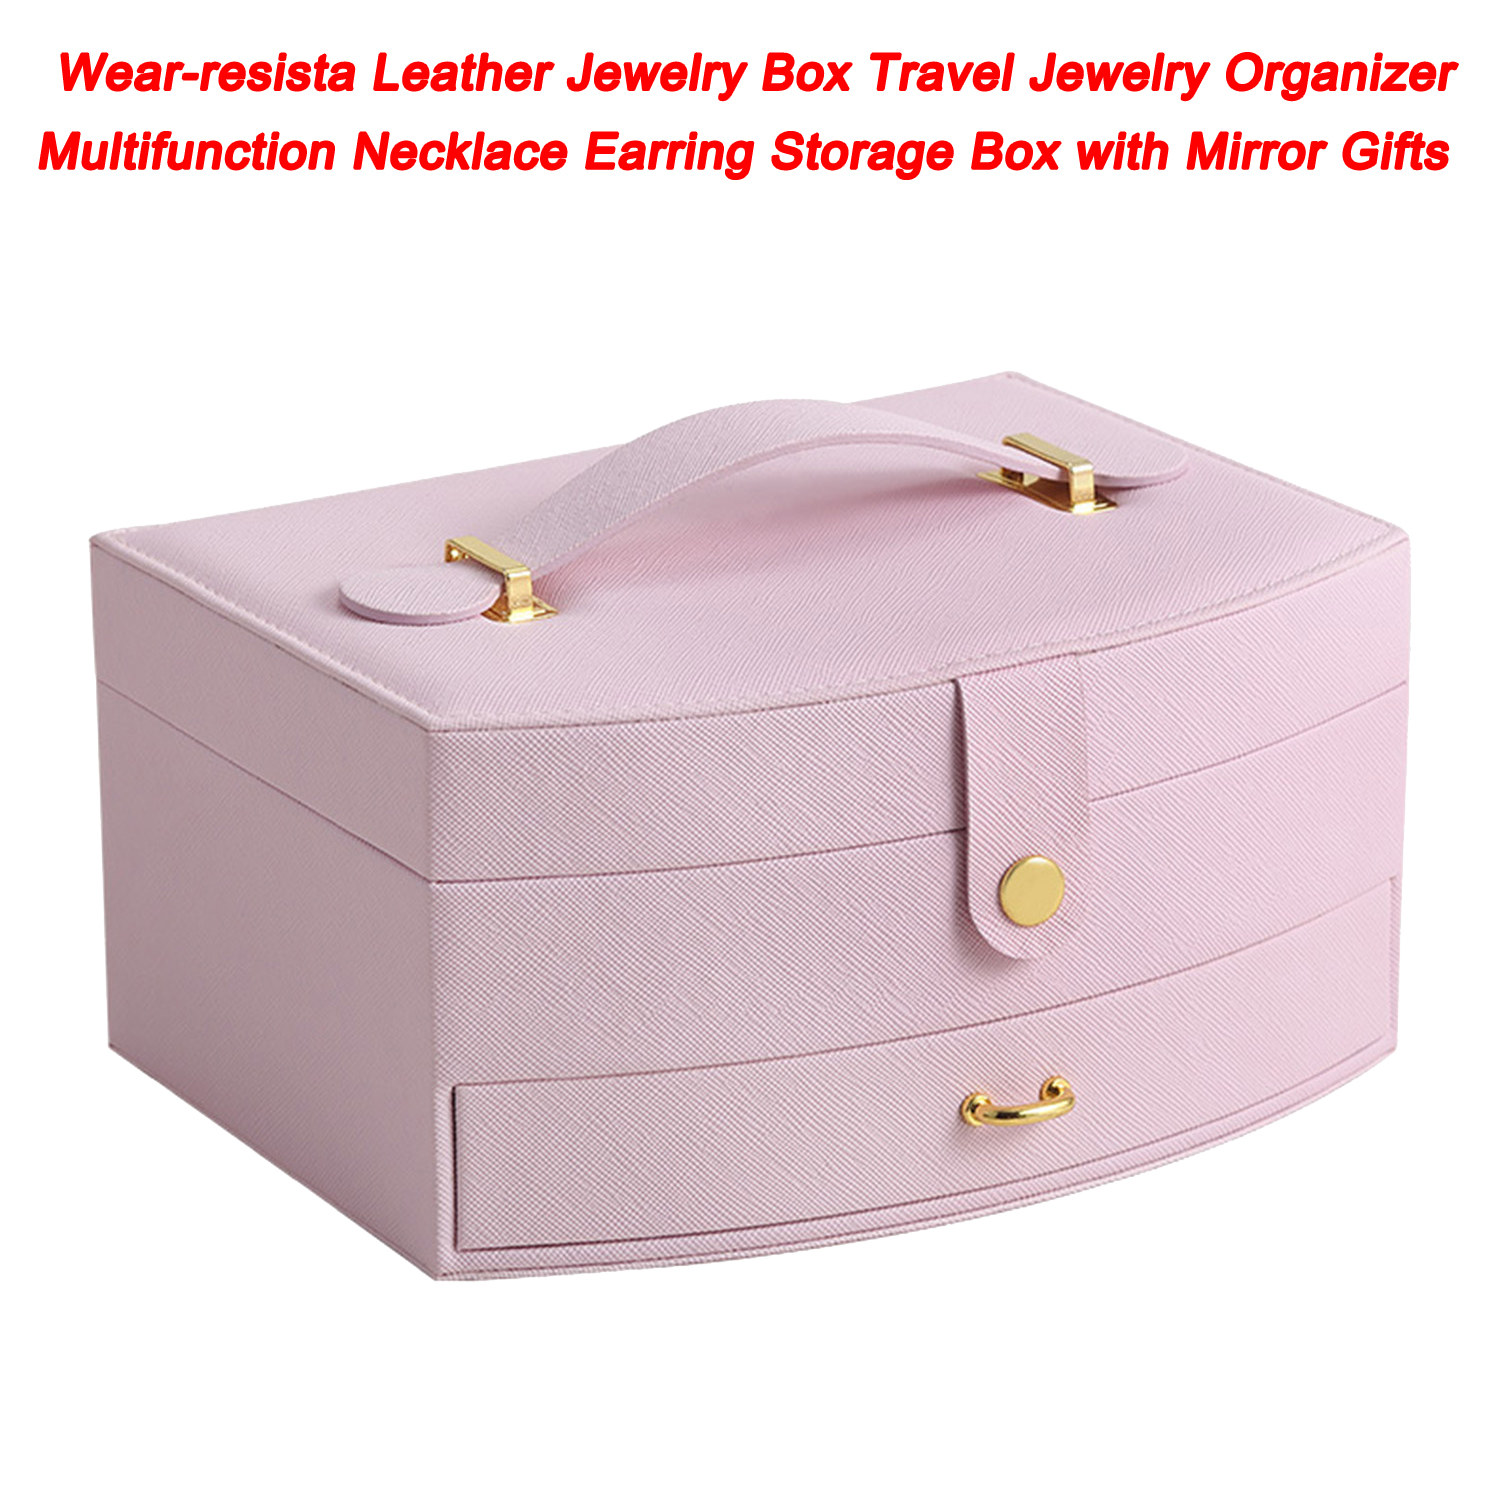 Joyero de cuero resistente al desgaste, organizador de joyas de viaje, caja de almacenamiento multifunción para collares y pendientes con espejo para regalos